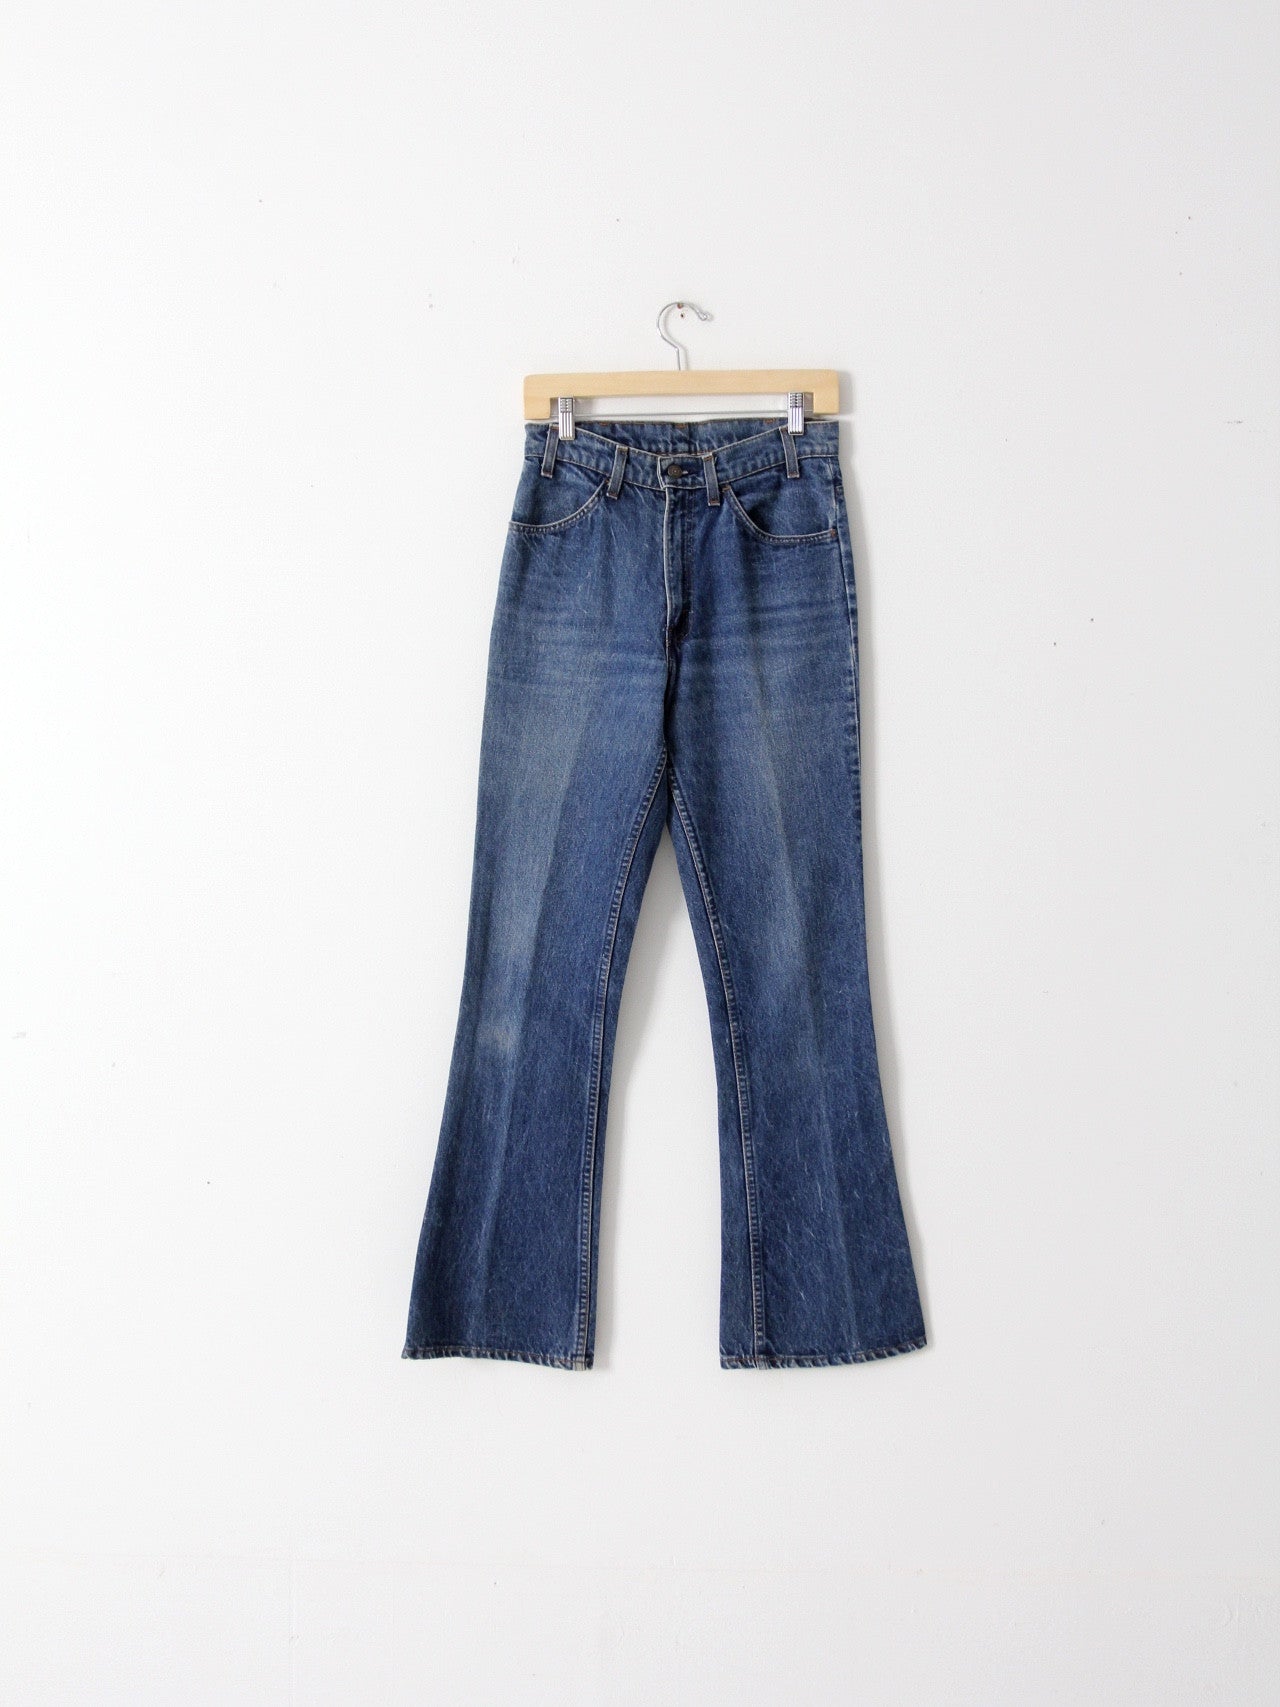 vintage 70s Levis 646 denim jeans, 28 x 32 – 86 Vintage